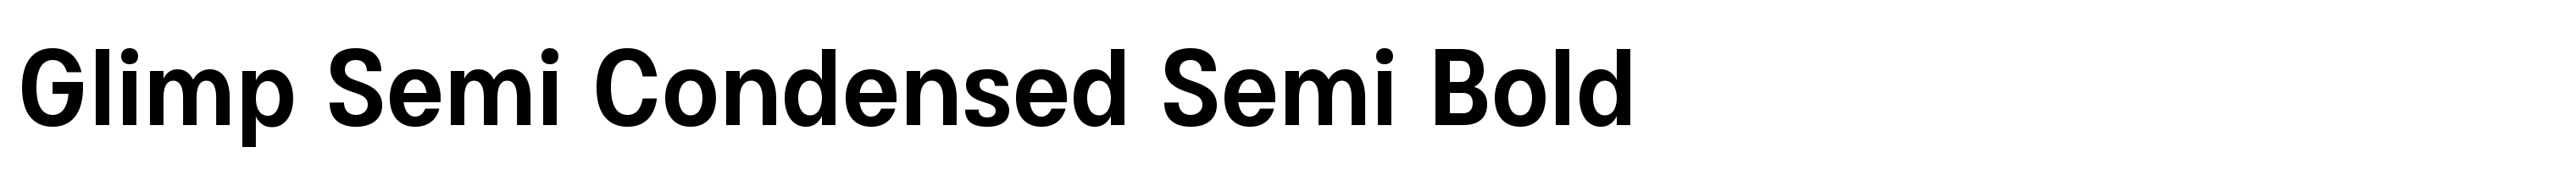 Glimp Semi Condensed Semi Bold